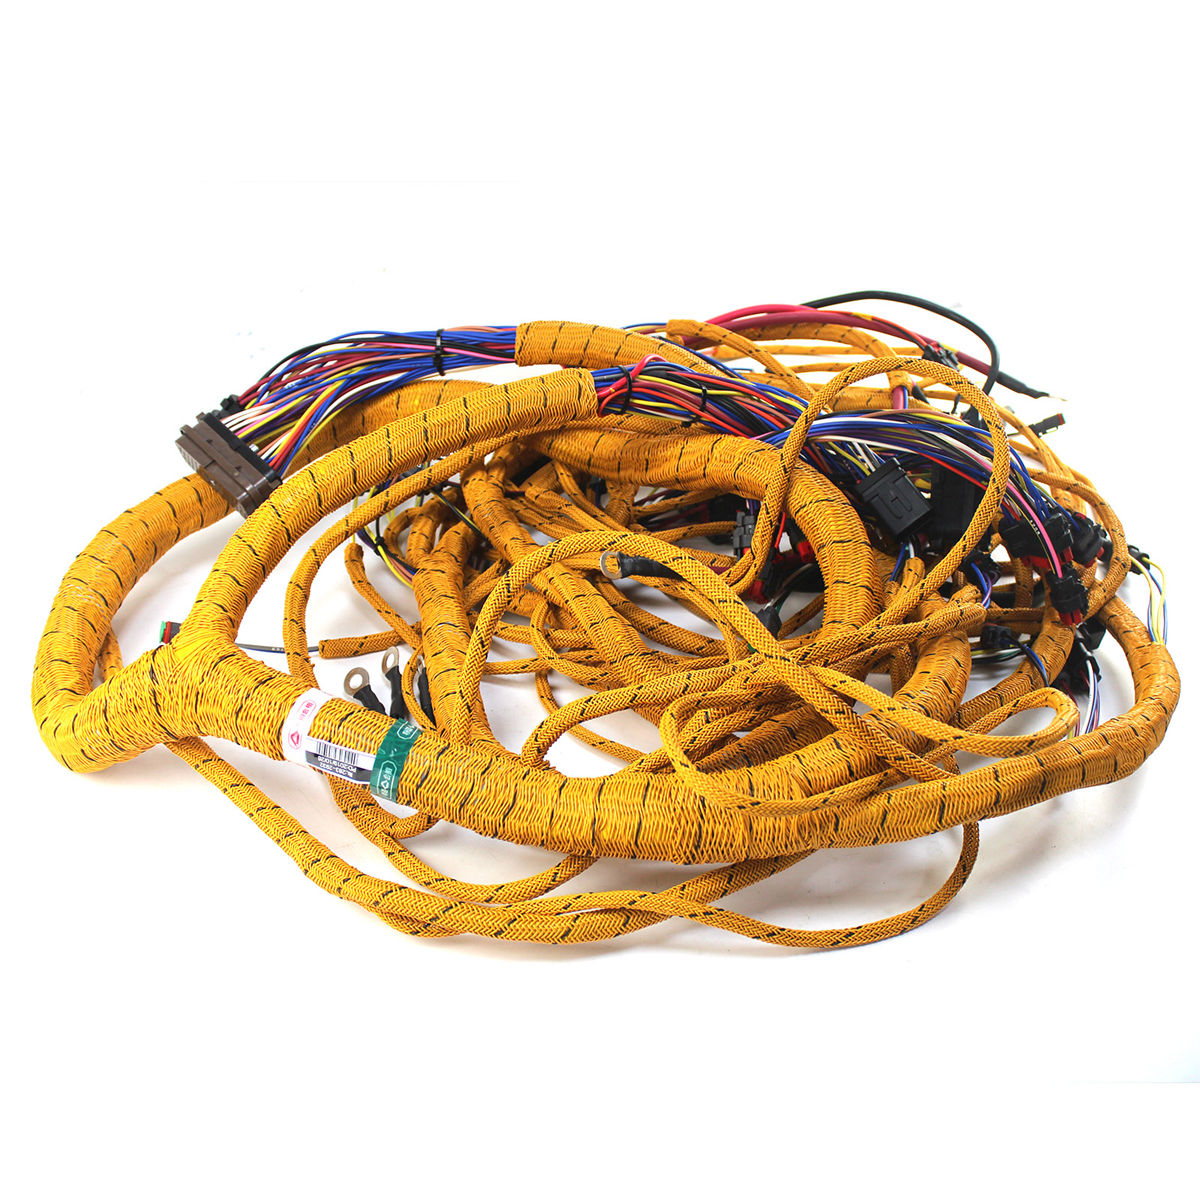 283-2932 2832932 Wiring Harness Assembly for CAT Caterpillar E329D 324D 325D - Sinocmp